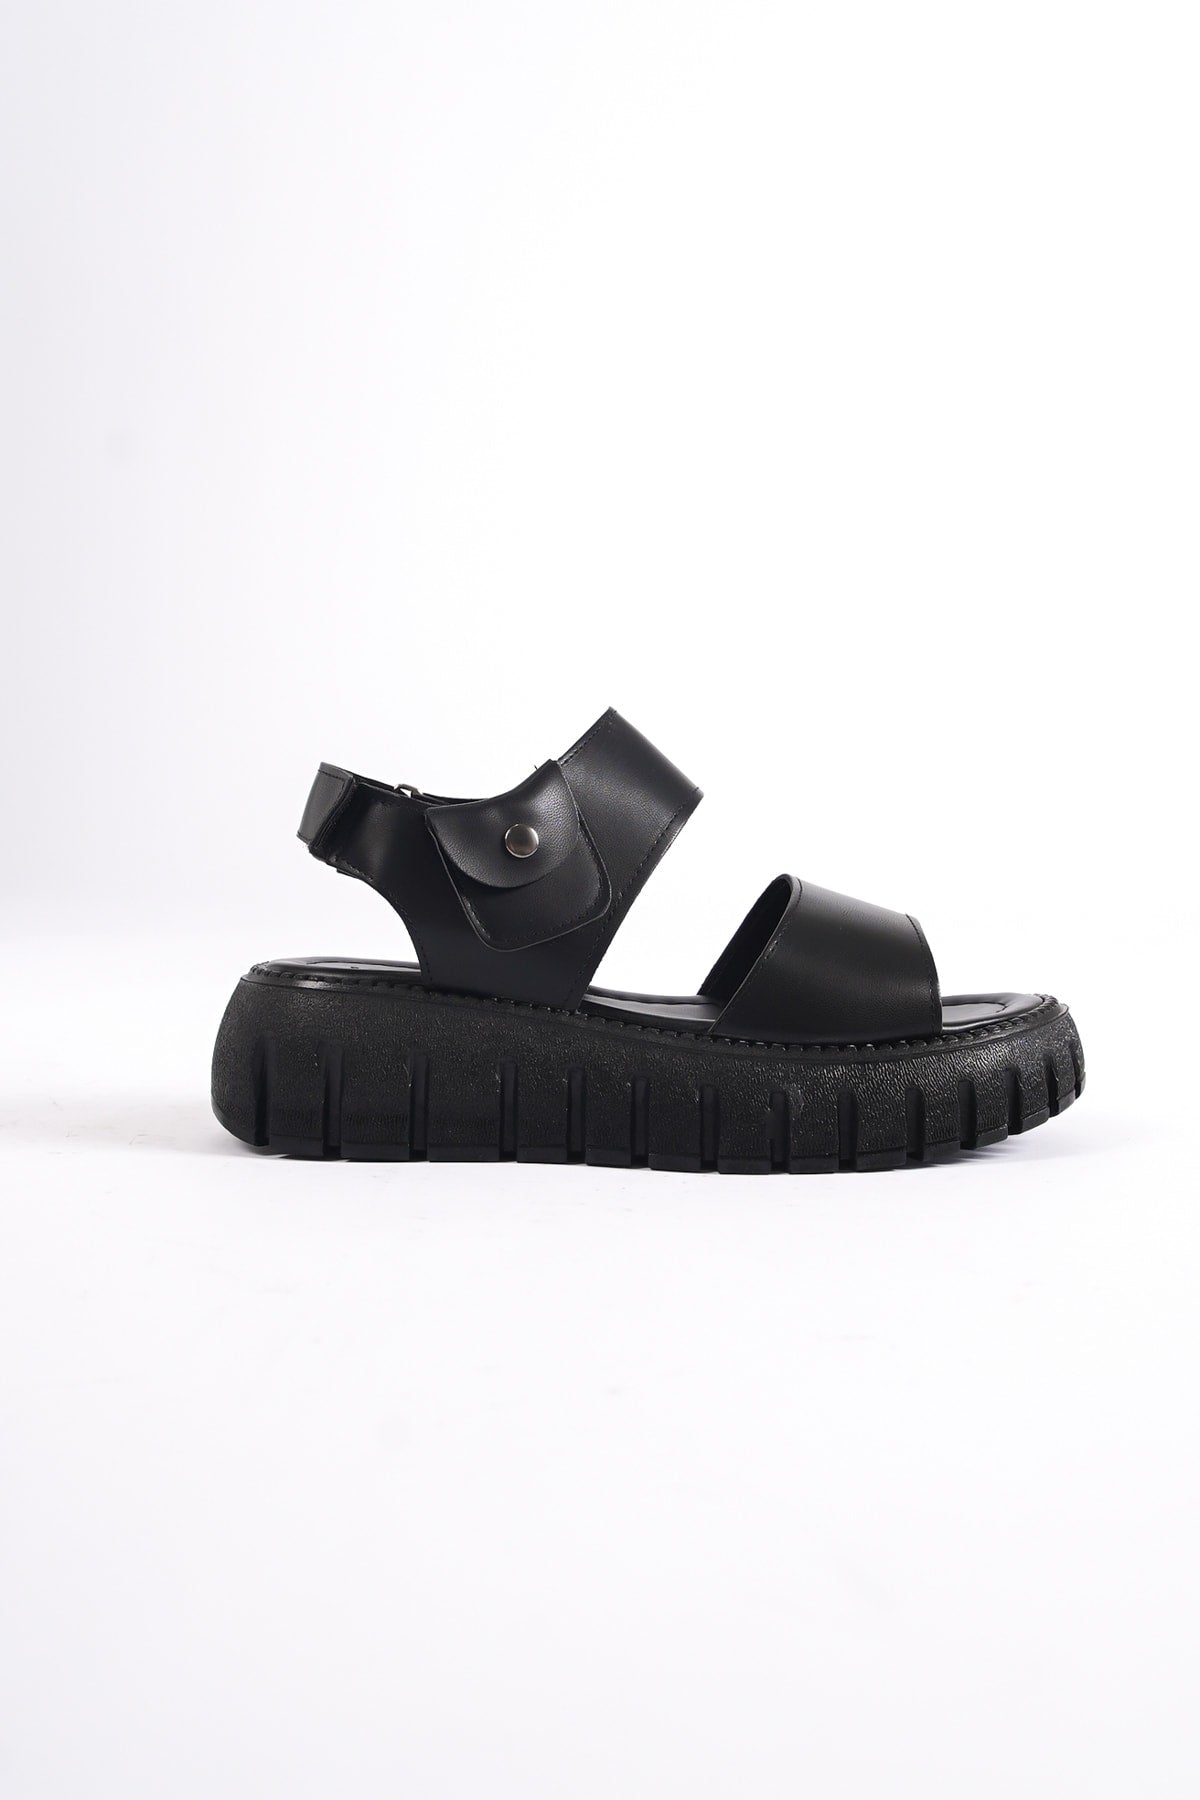 735-s Black Gladiator Platform Sandals